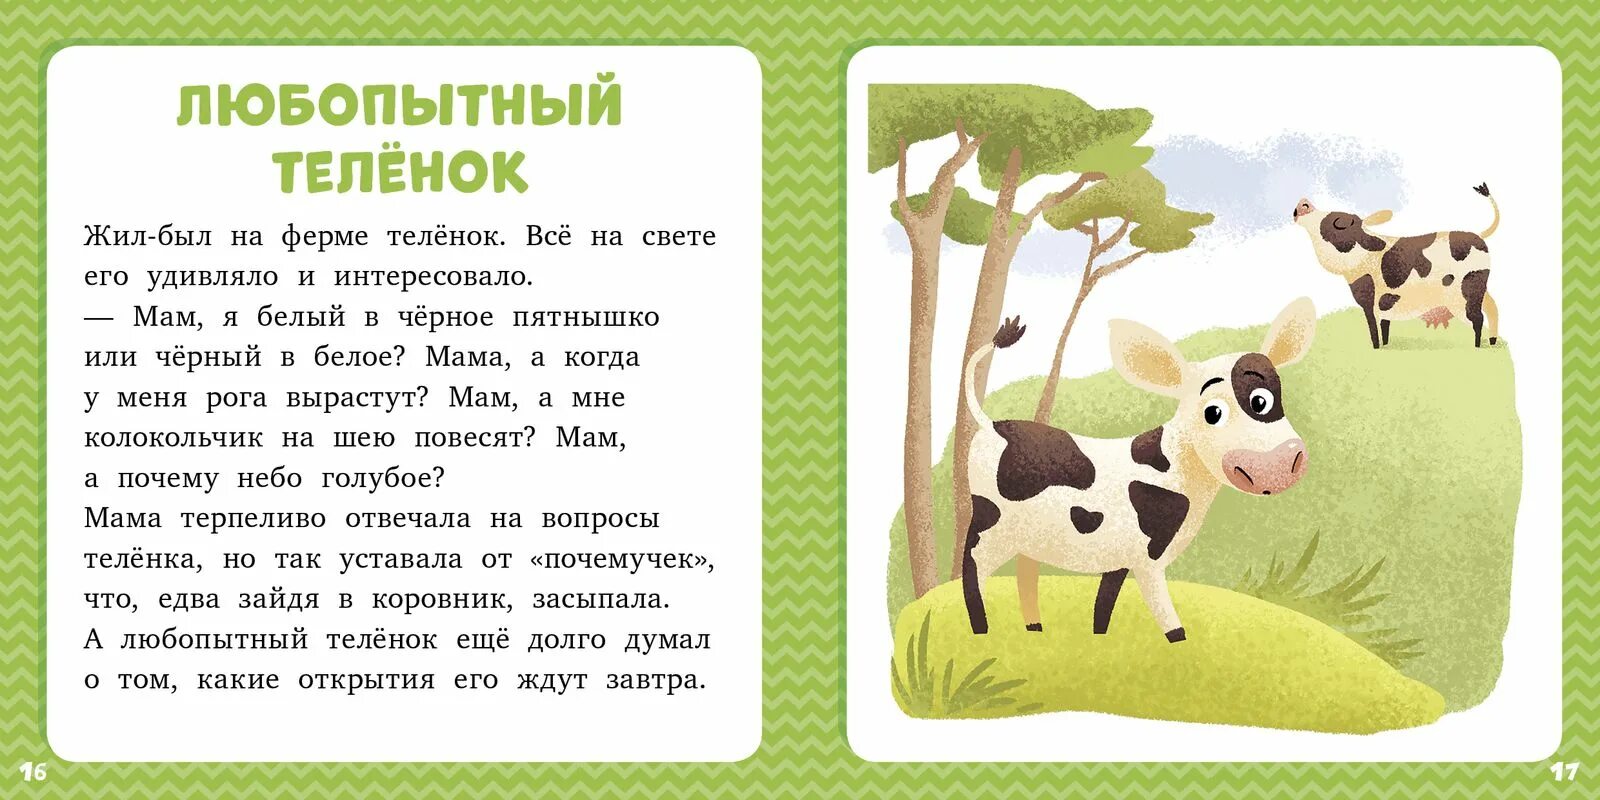 Читать детям интересные сказки. Лида Данилова 17 историй и сказок для первого чтения Веселые поросята. Маленькие рассказы для детей. Короткие рассказы для малышей. Короткие сказки для детей.